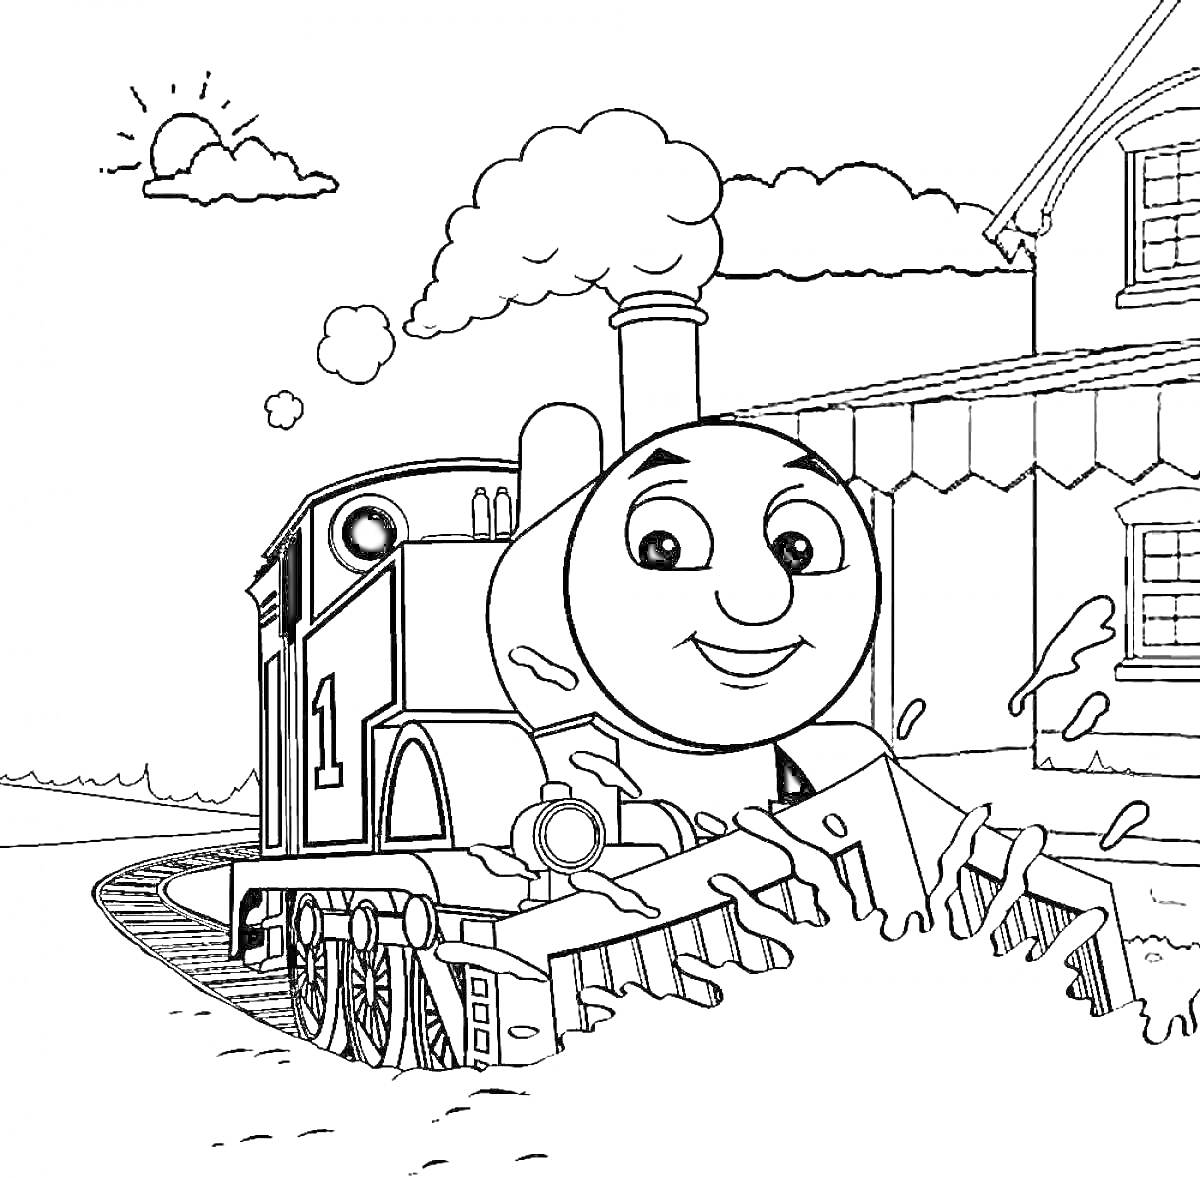 Паровозик Томас на железной дороге у здания под солнцем и облаками